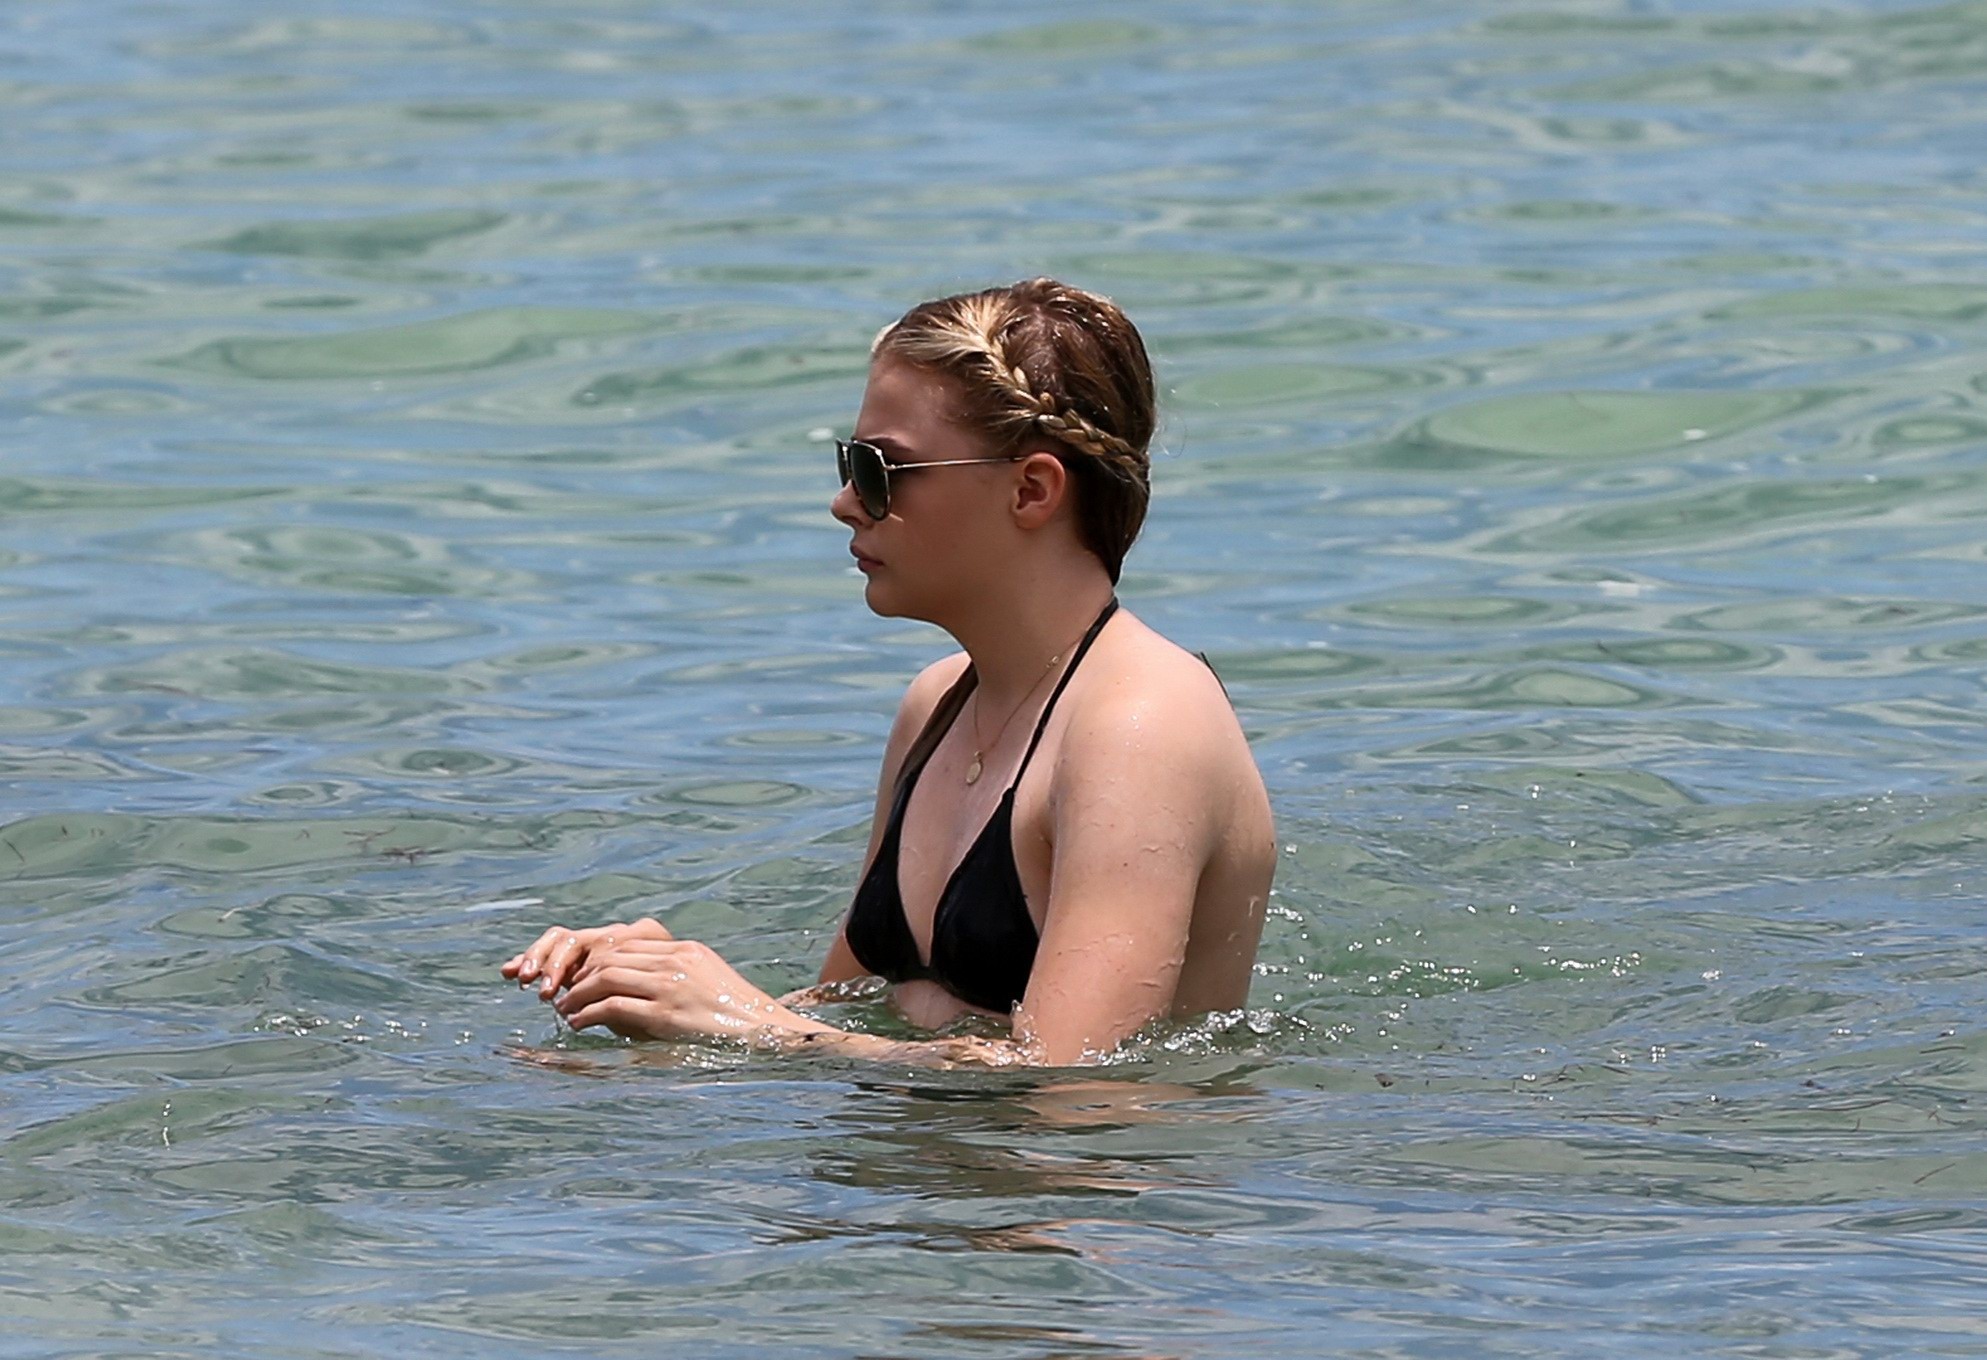 Chloe Moretz shows off her juicy ass in a skimpy black bikini at the beach in Mi #75188996